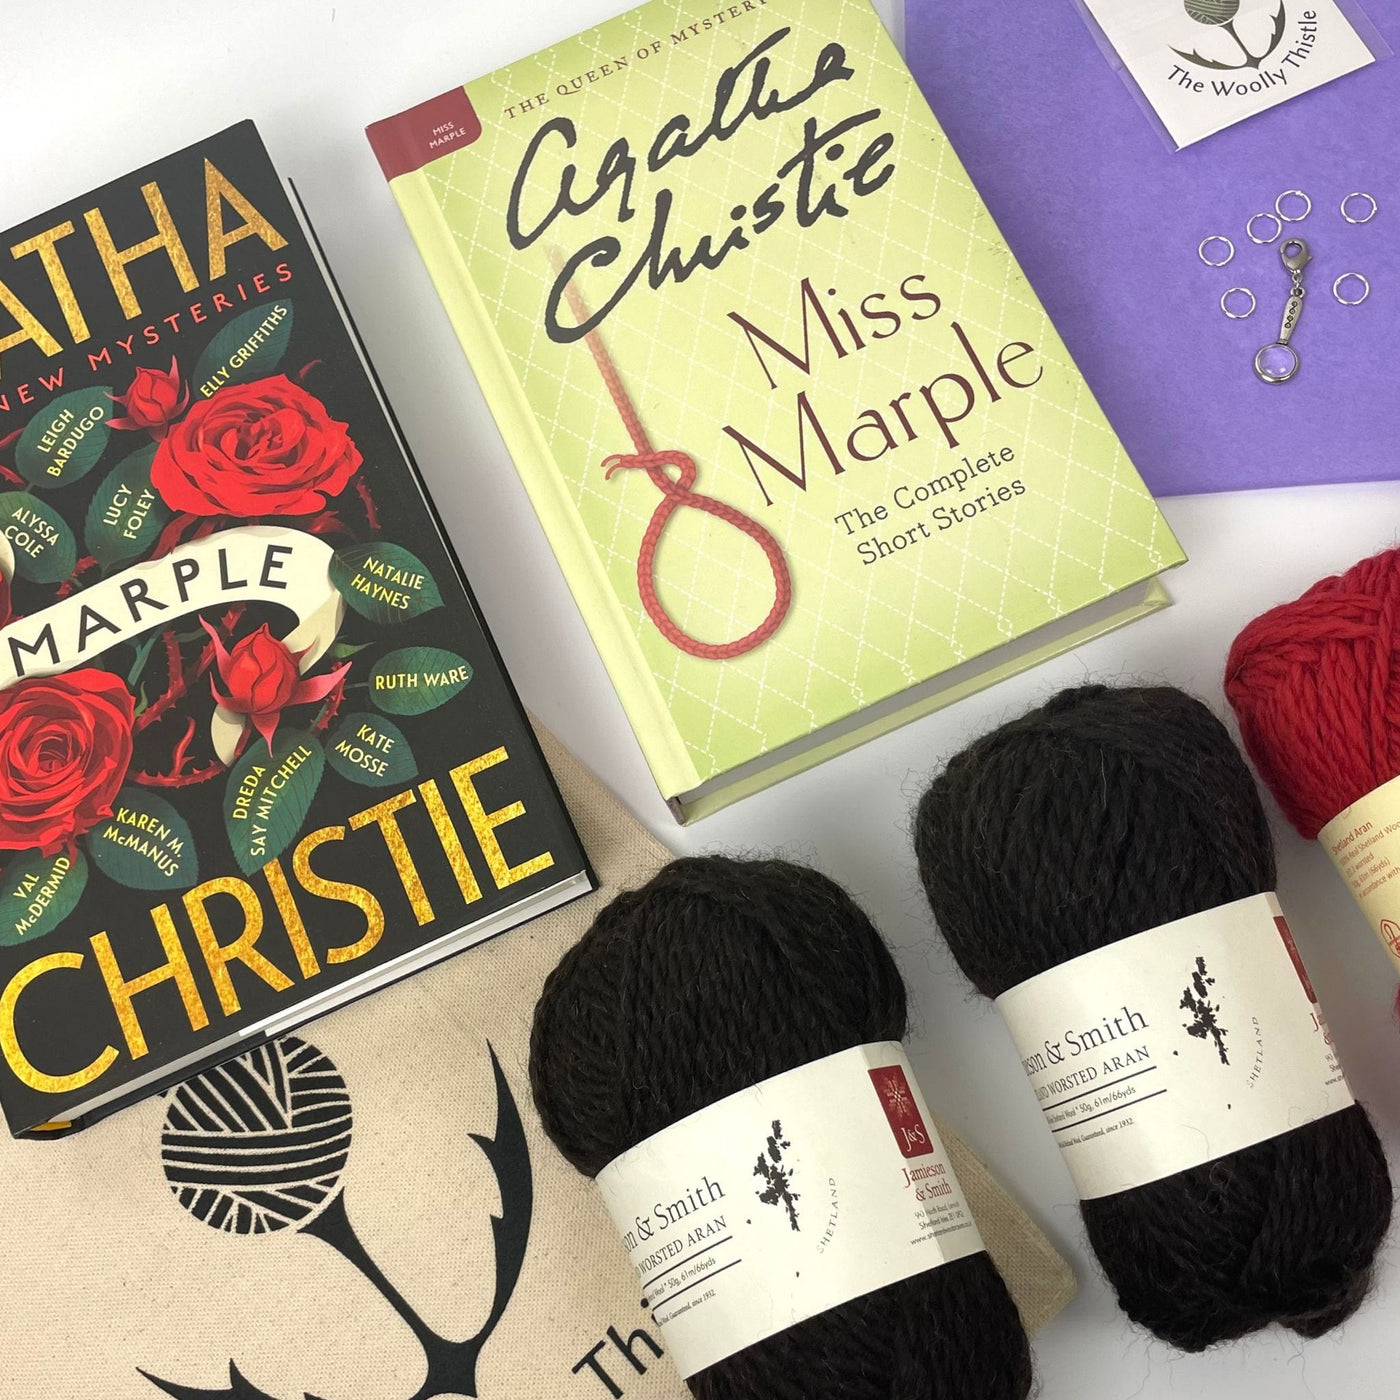 Agatha Christie Book Bundle featuring Jamieson & Smith Yarn